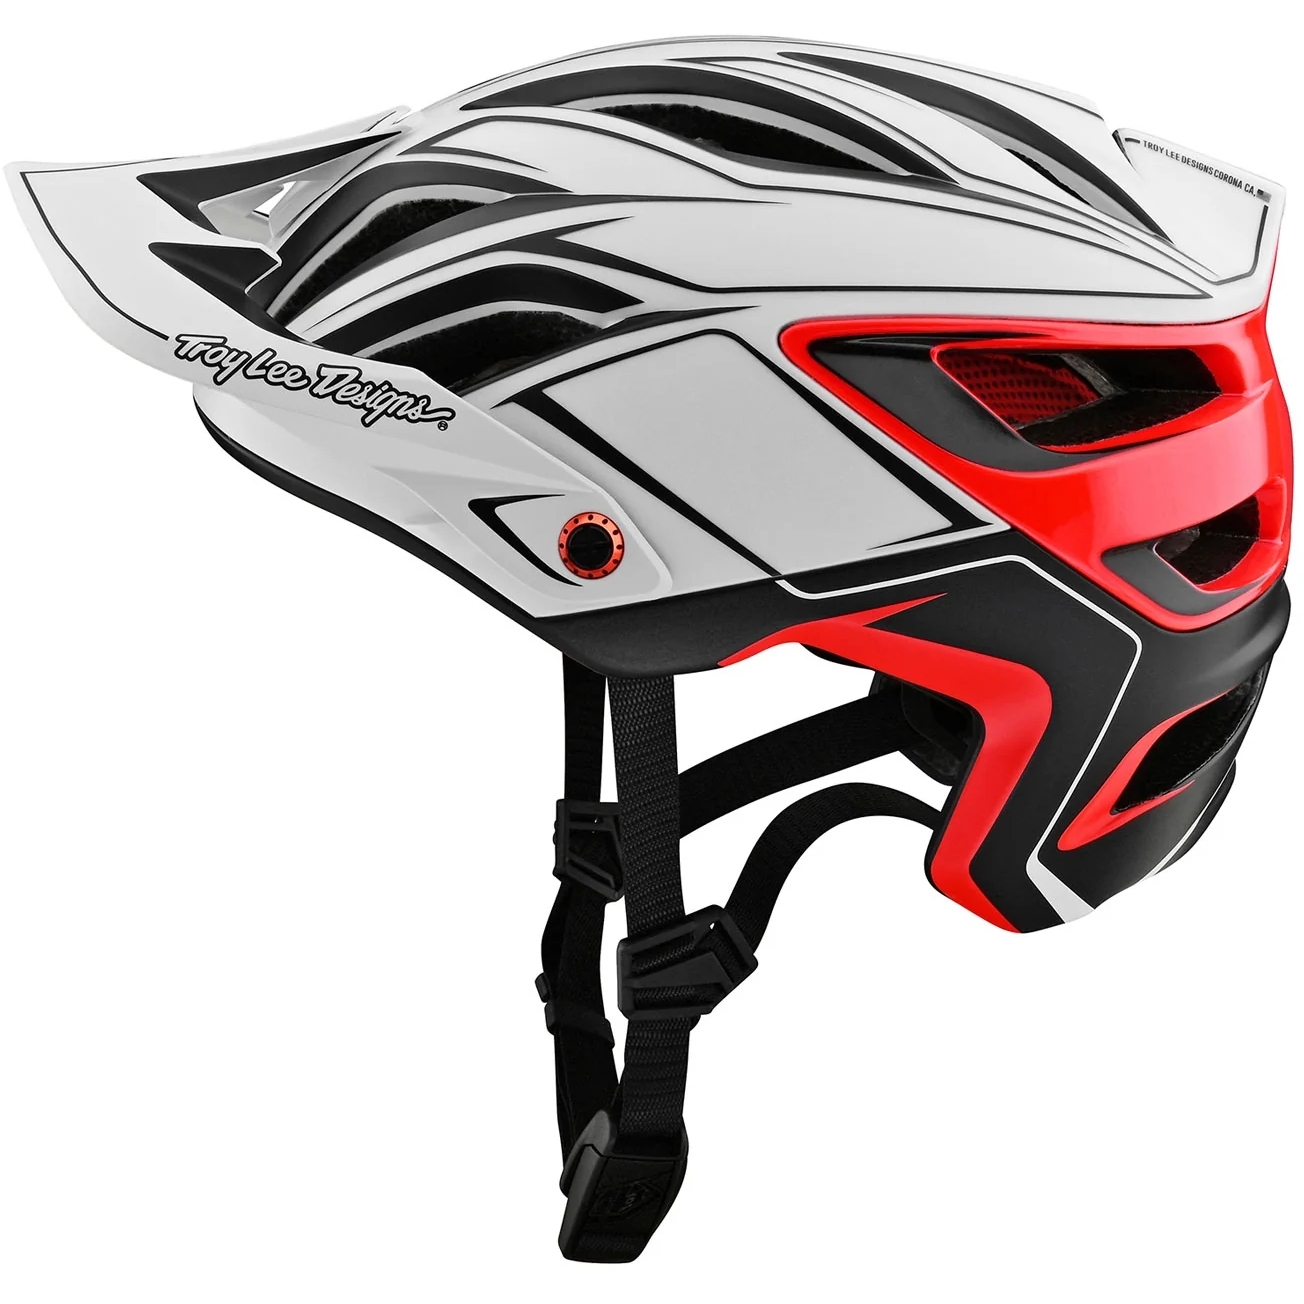 Produktbild von Troy Lee Designs A3 MIPS Helm - Pin White/Red